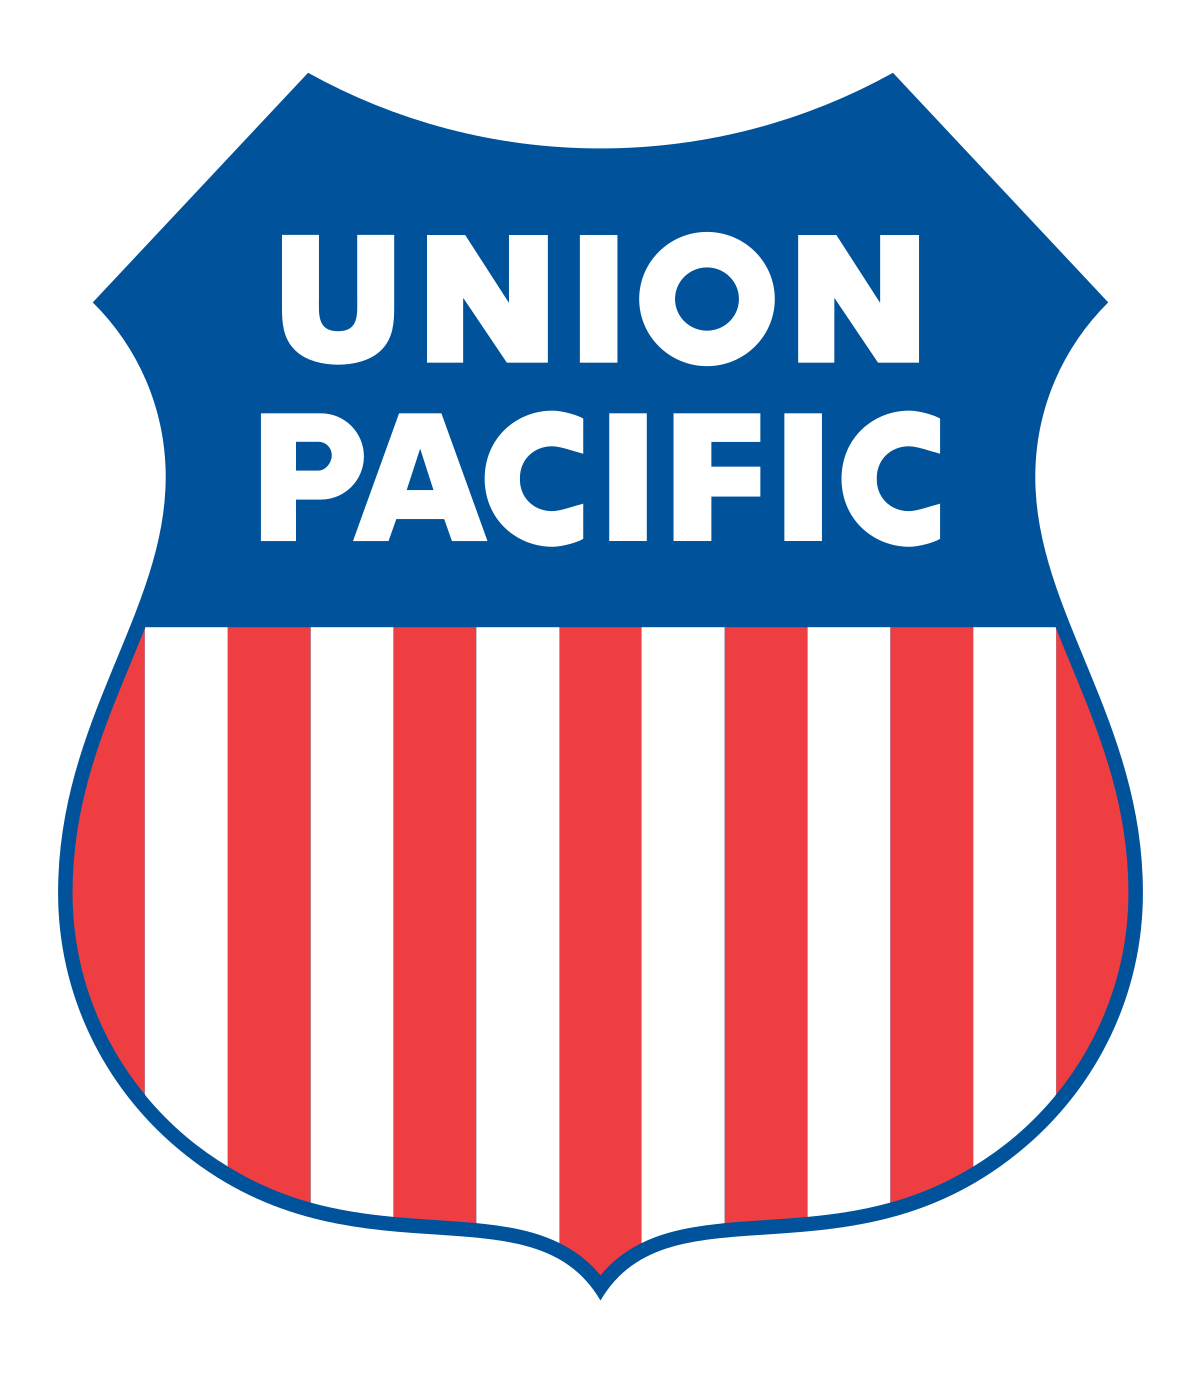 Old Railroad Logo - Union Pacific Railroad